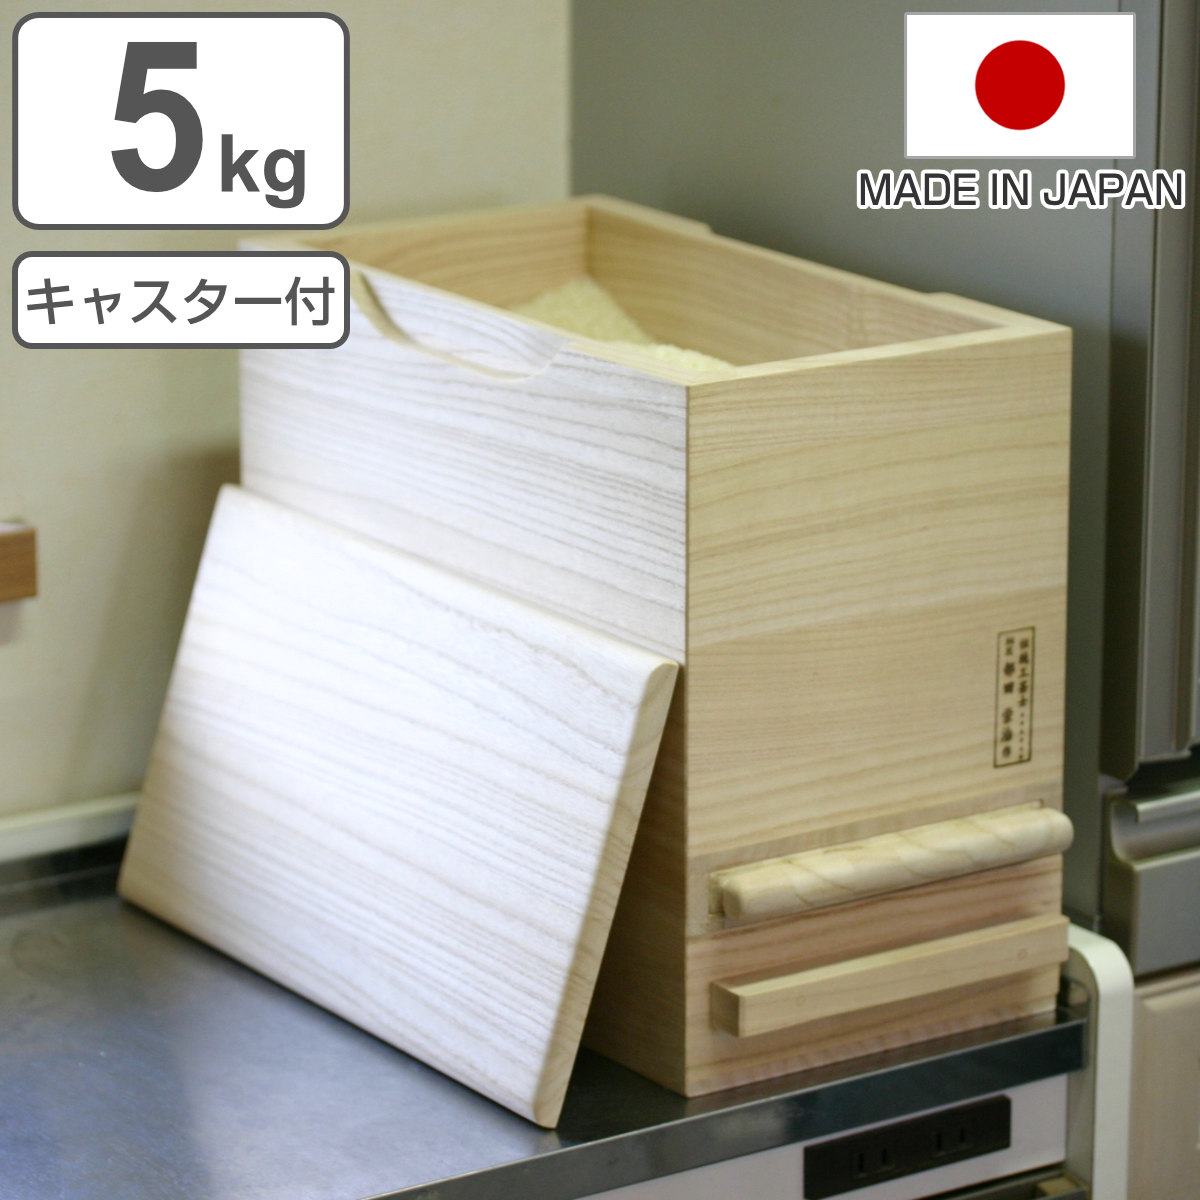 米びつ 計量機能付き キャスター付き 桐製 5kg 1合計量